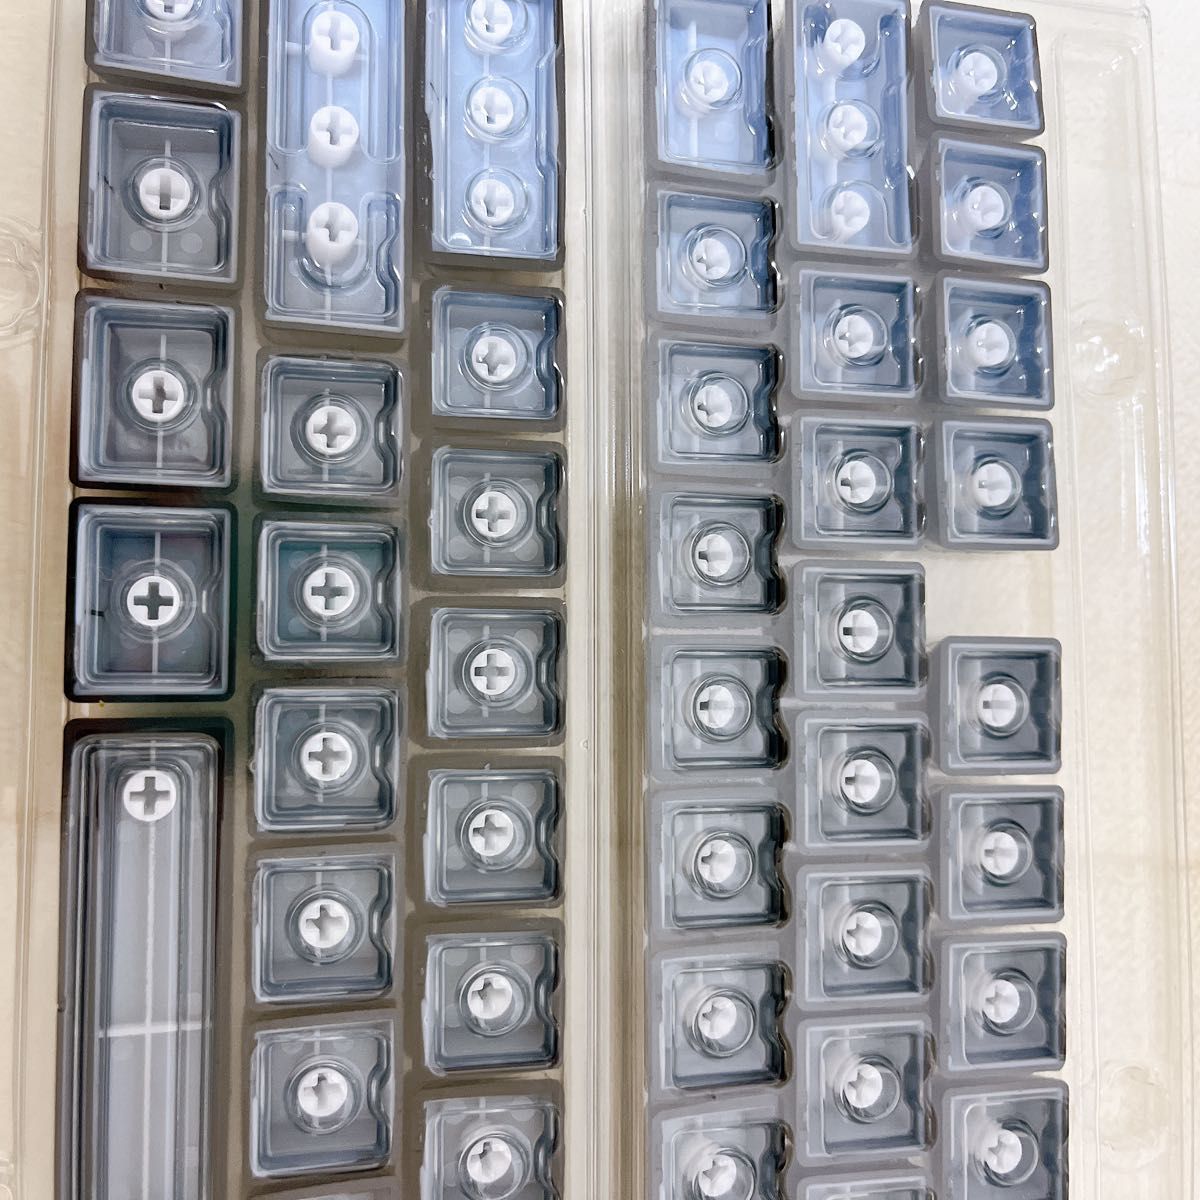 136キー キーキャップ プロファイル サイド彫刻 カスタム キーキャップ 日本語配列 キーボード